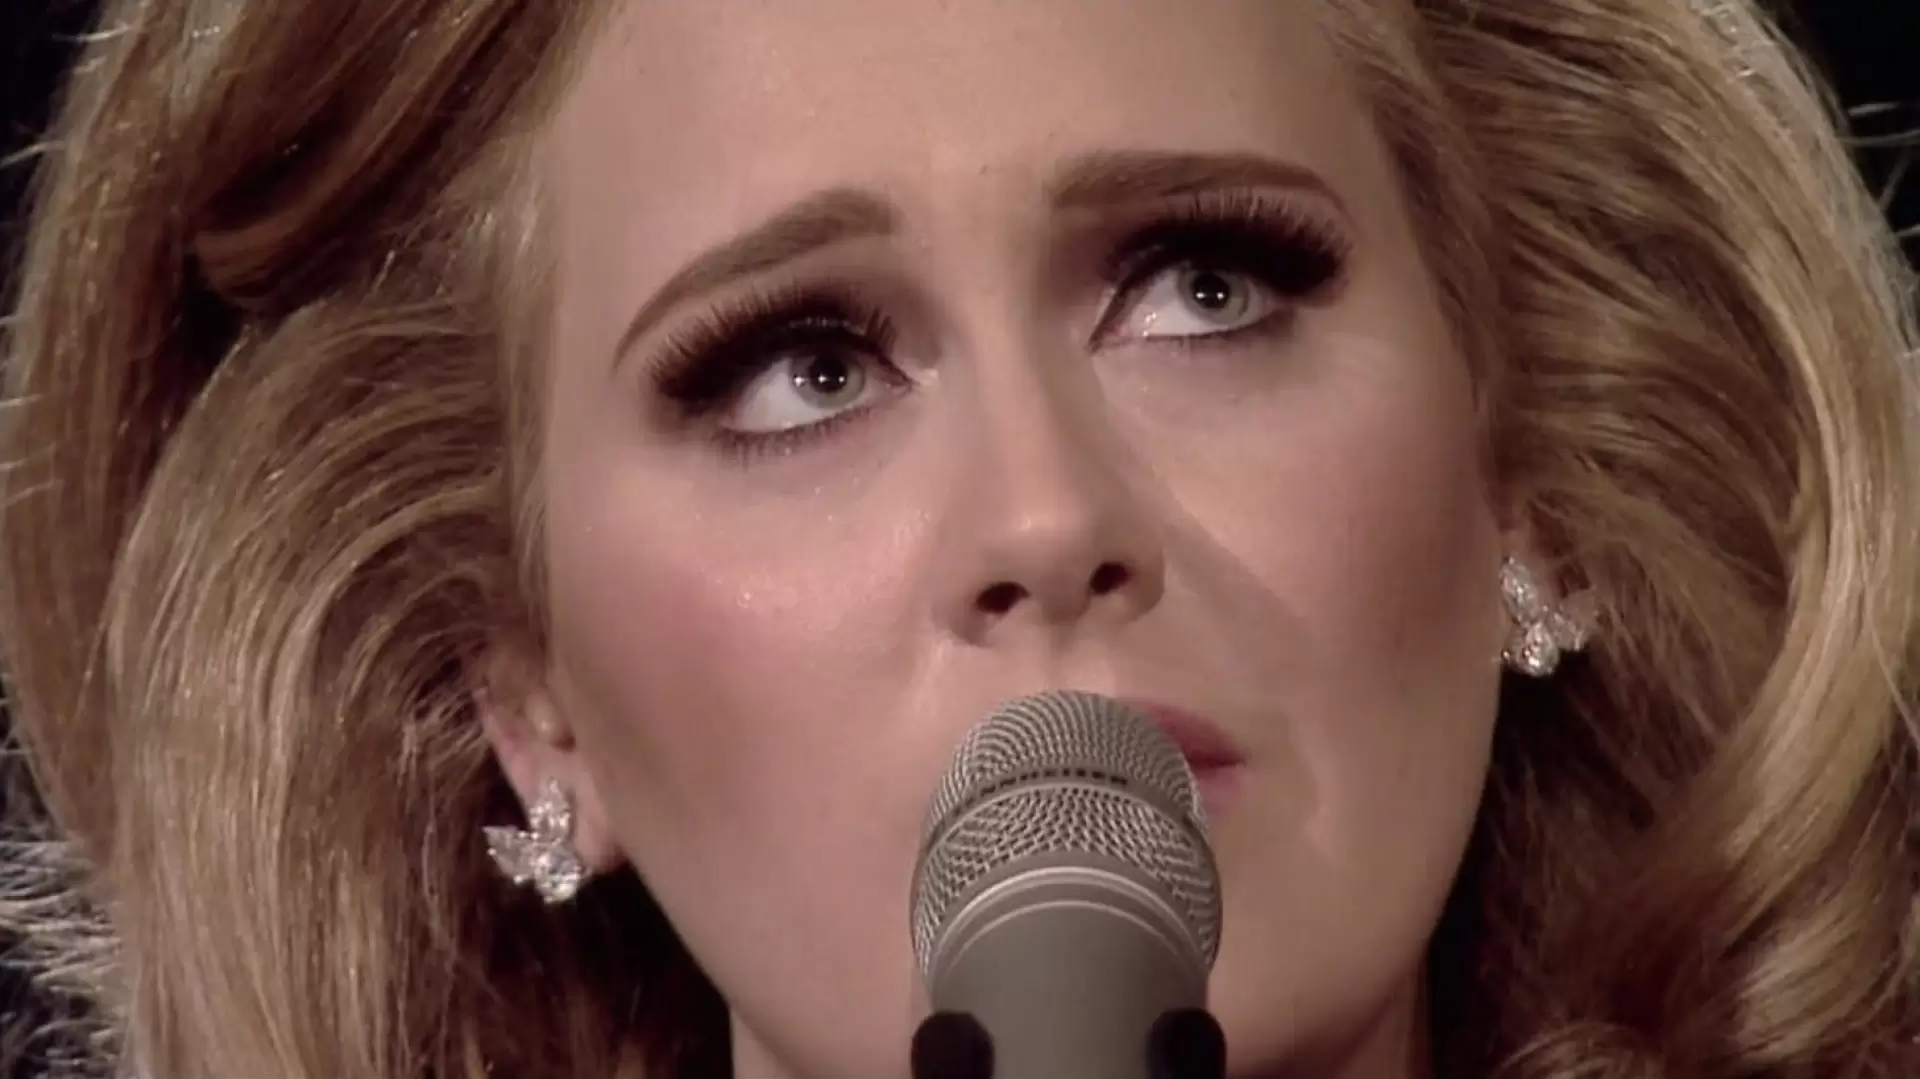 دانلود کنسرت Adele Live at the Royal Albert Hall 2011 با زیرنویس فارسی